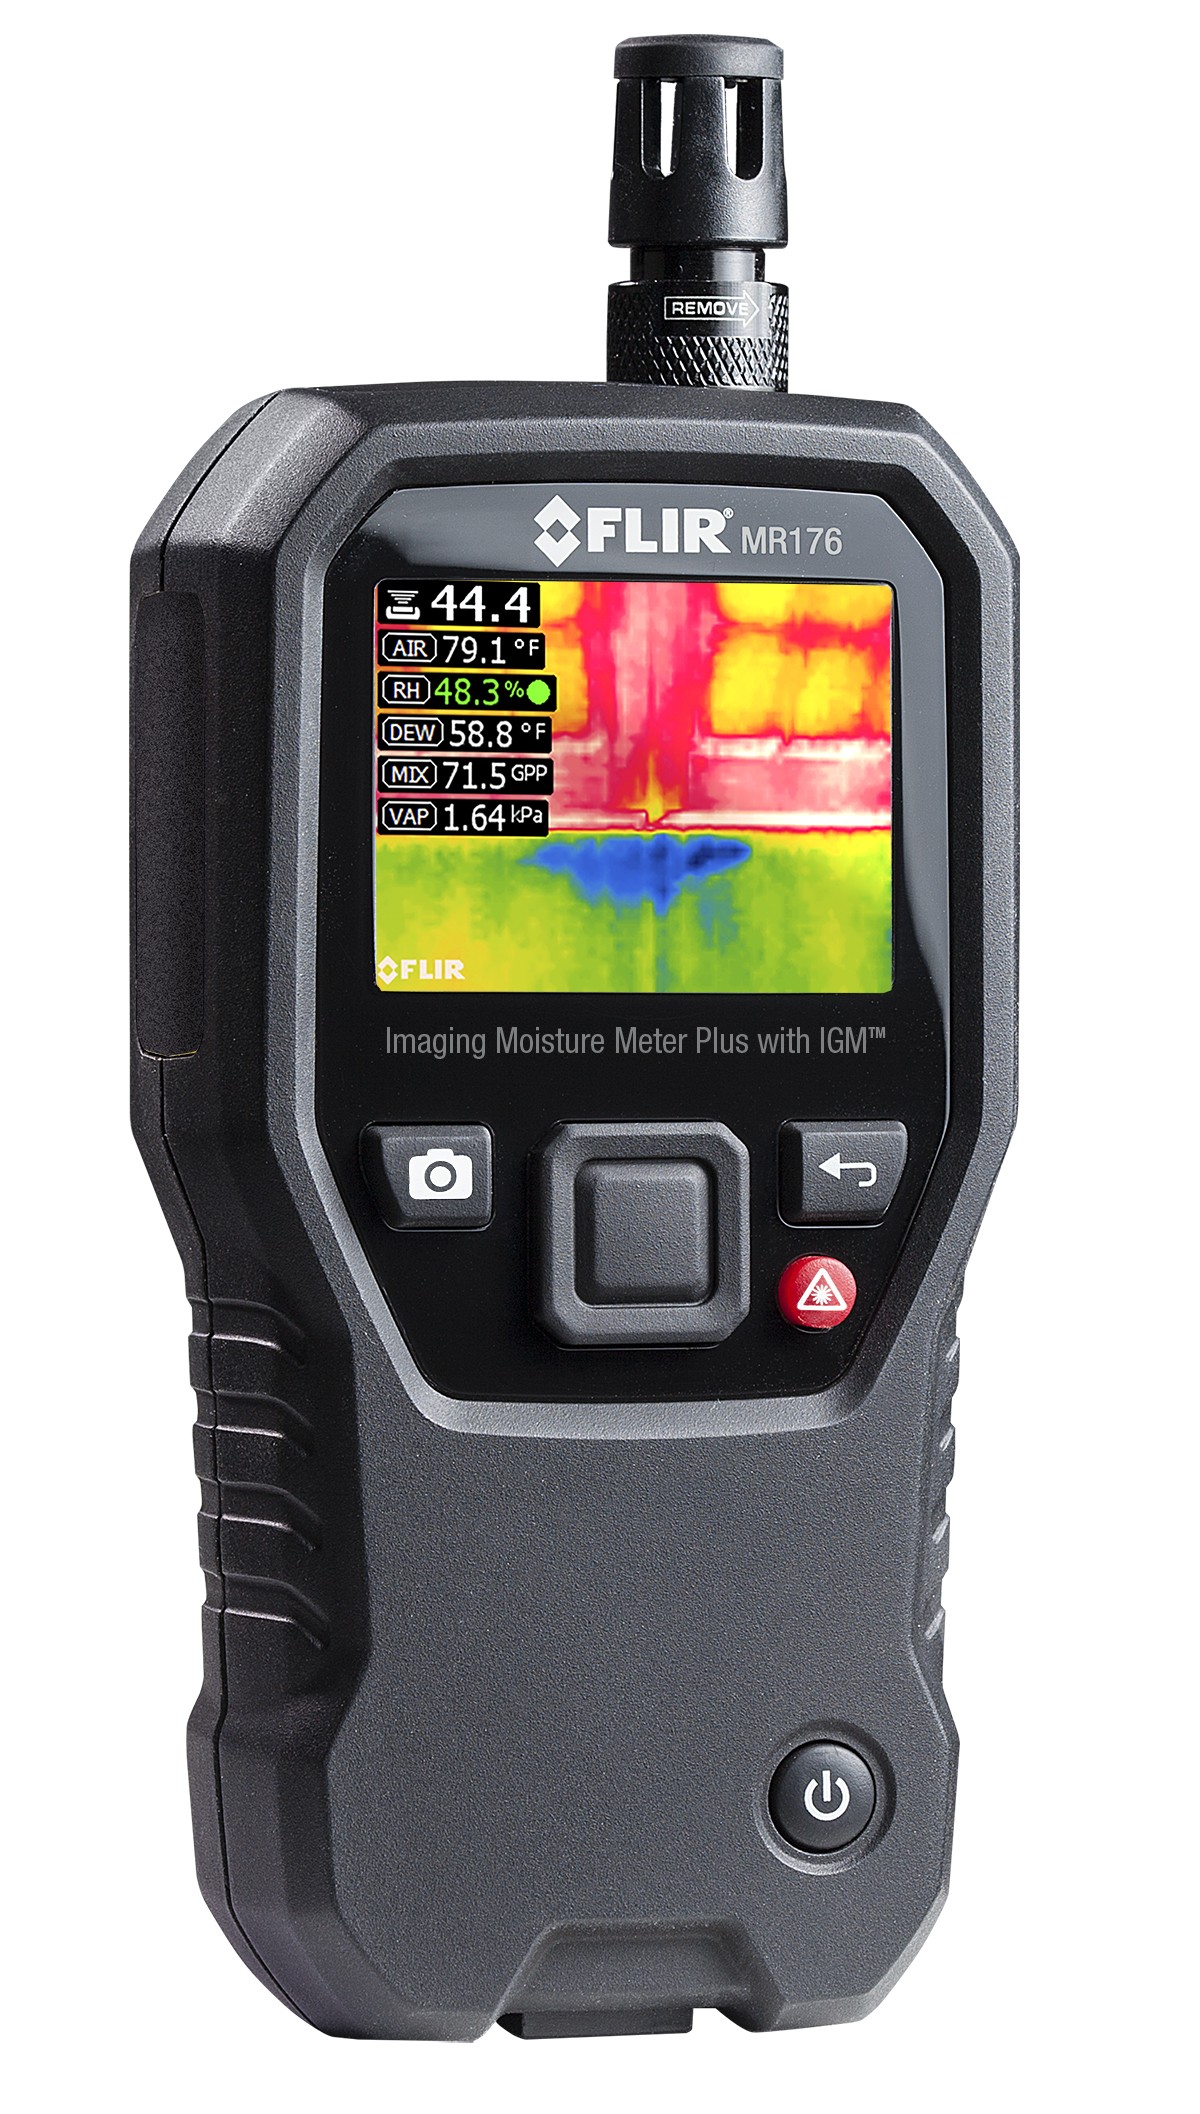 FLIR MR176 Imaging Moisture Meter Plus with IGM